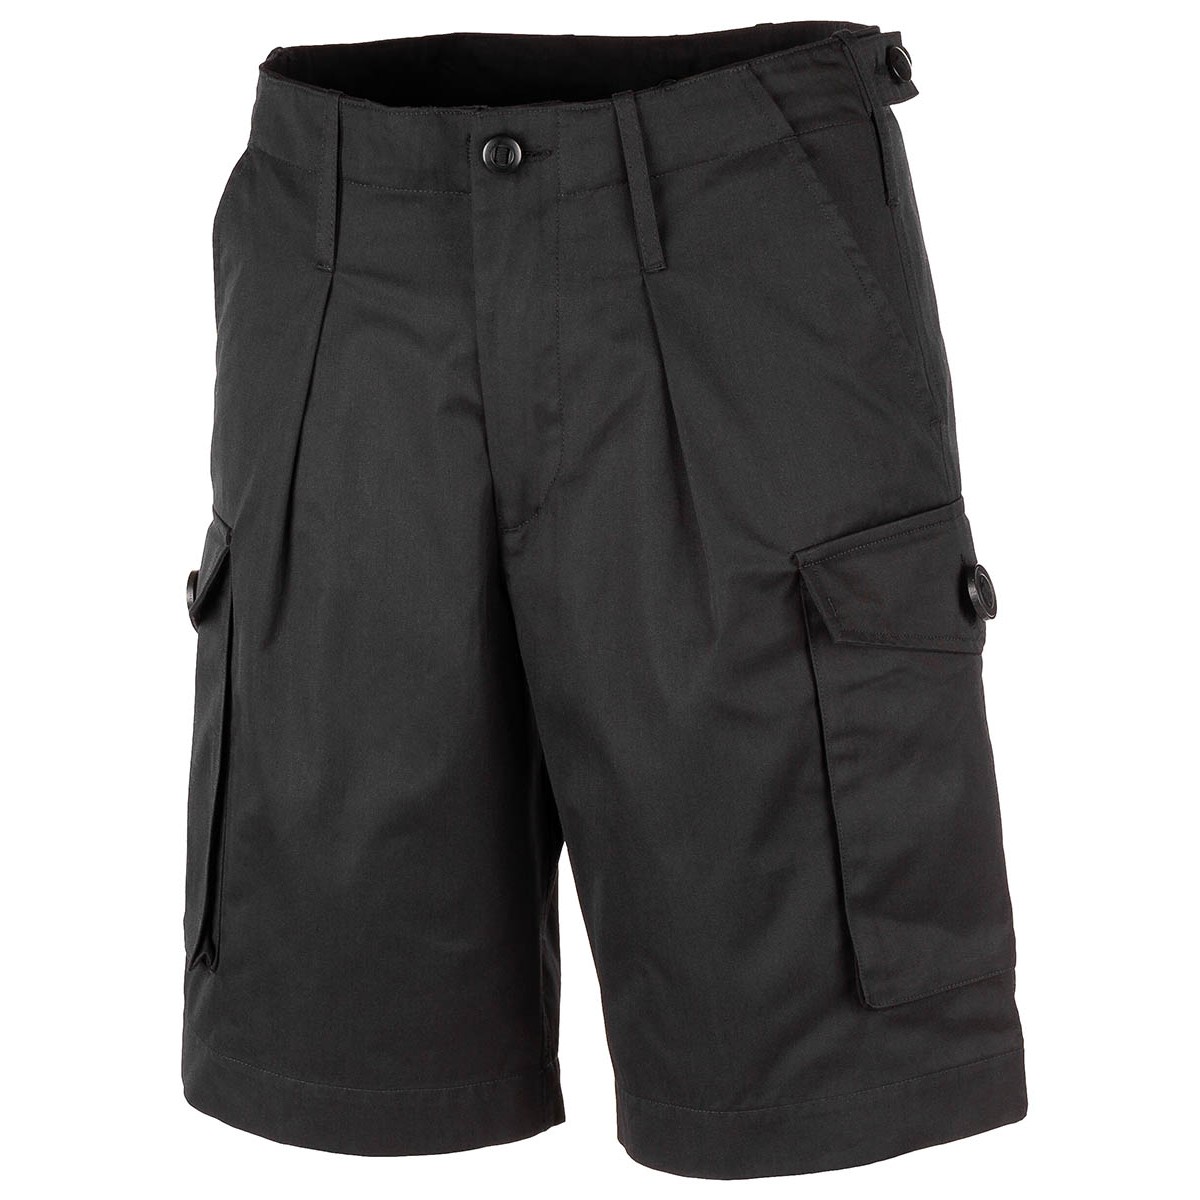 Krátké kalhoty MFH Combat Bermuda - černé, XL